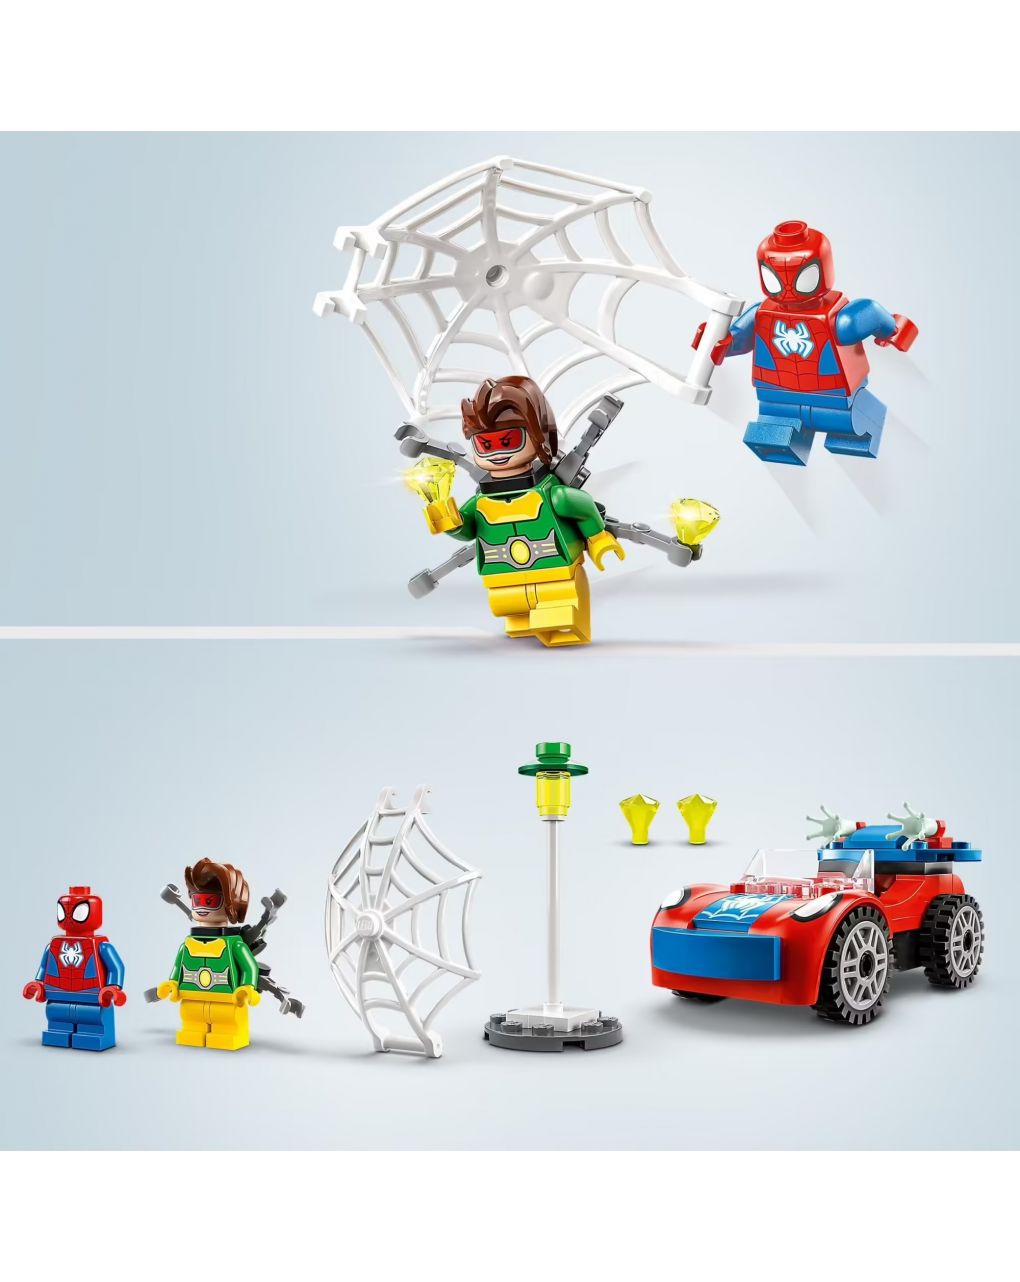 Coche de spiderman y doc ock - spidey y sus amigos fantásticos - lego marvel - SPIDEY